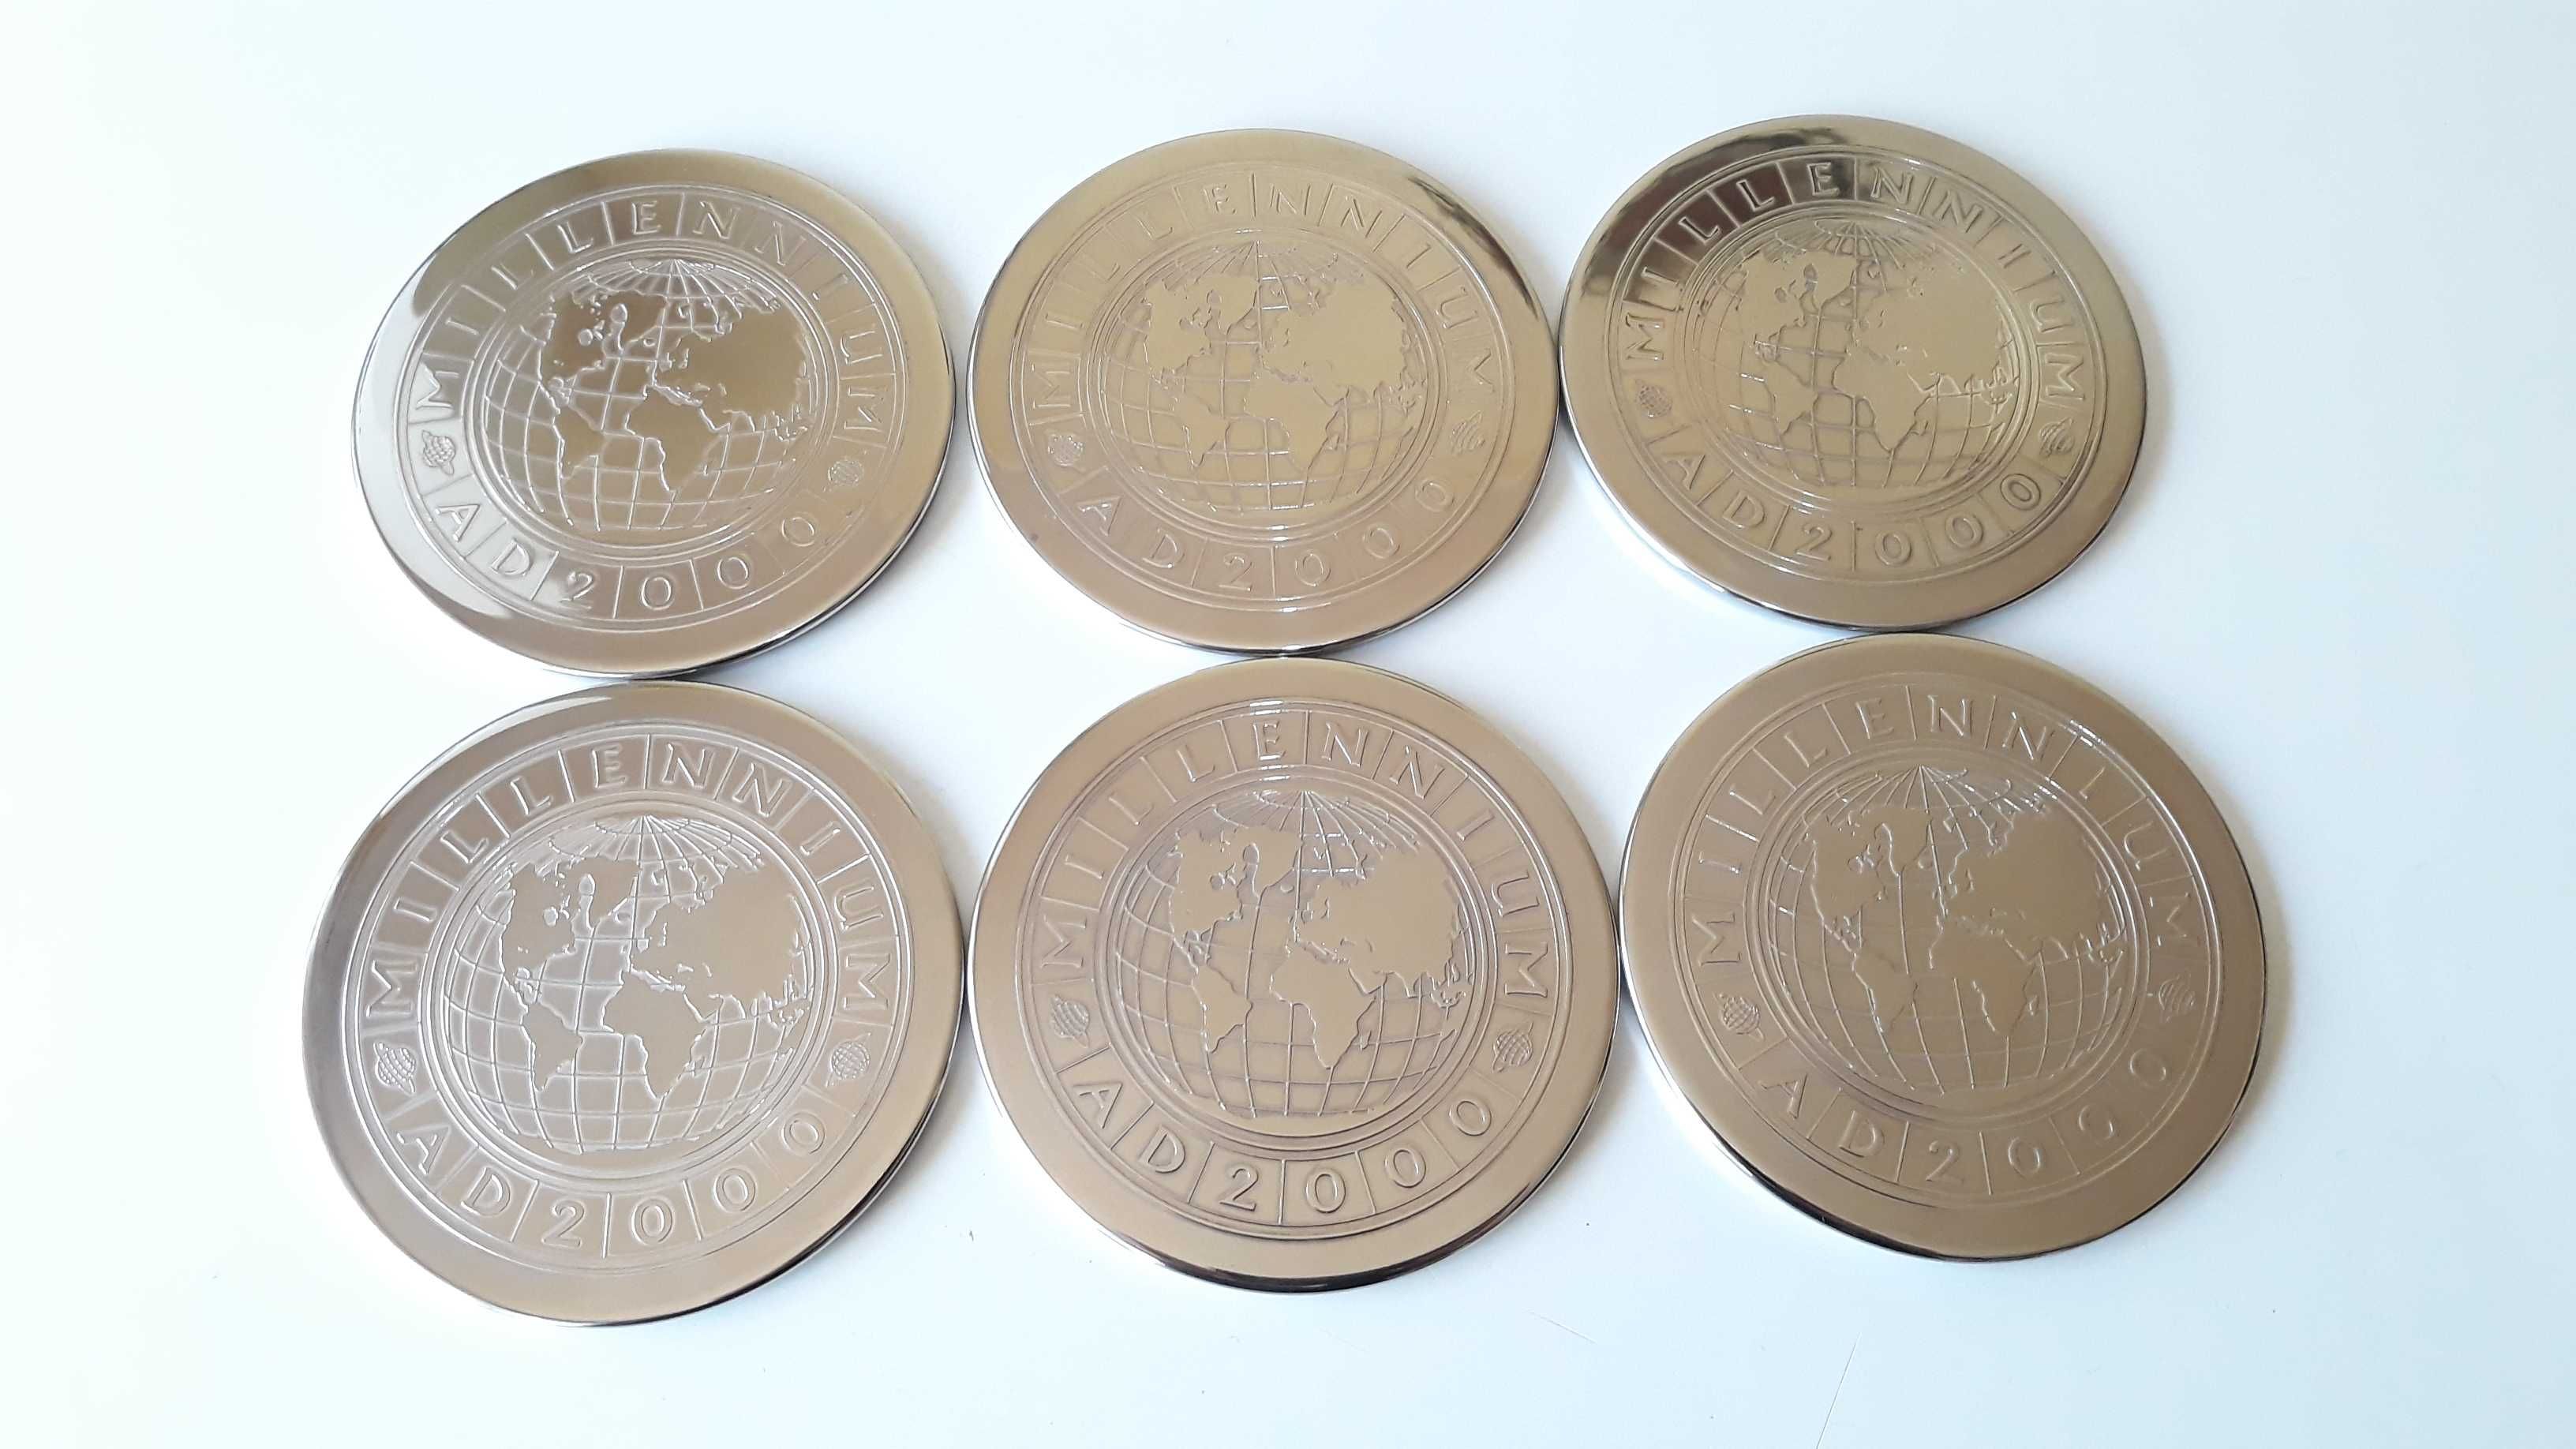 Vechi Suport Pahare Millenium 2000 Coasters, Placate cu argint